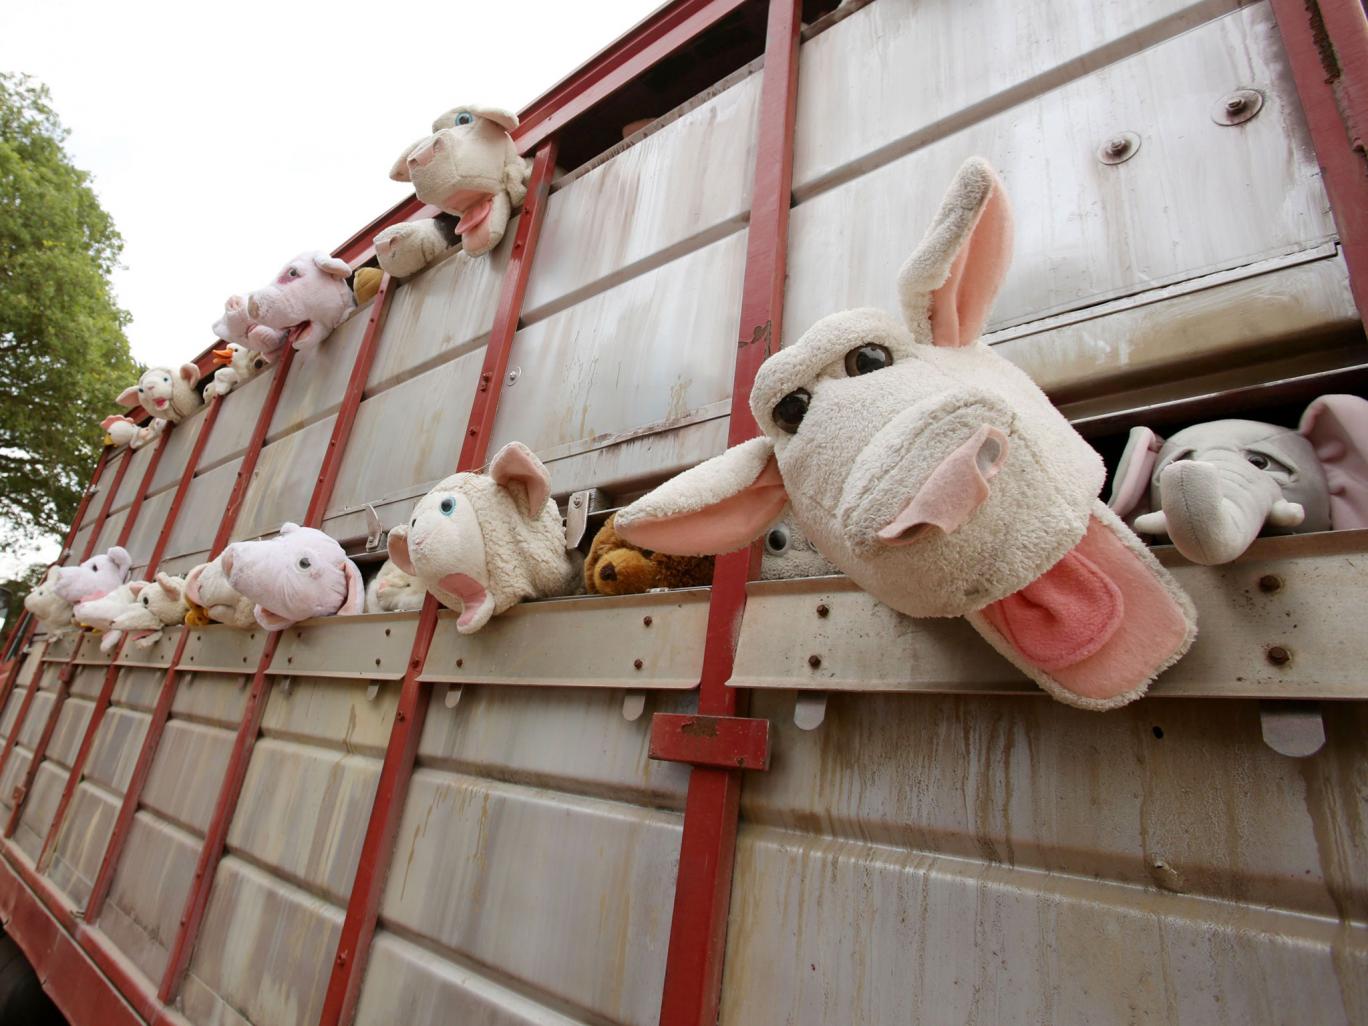 “Sirens of the lambs”: animali di pezza per denunciare gli orrori dell’industria della carne